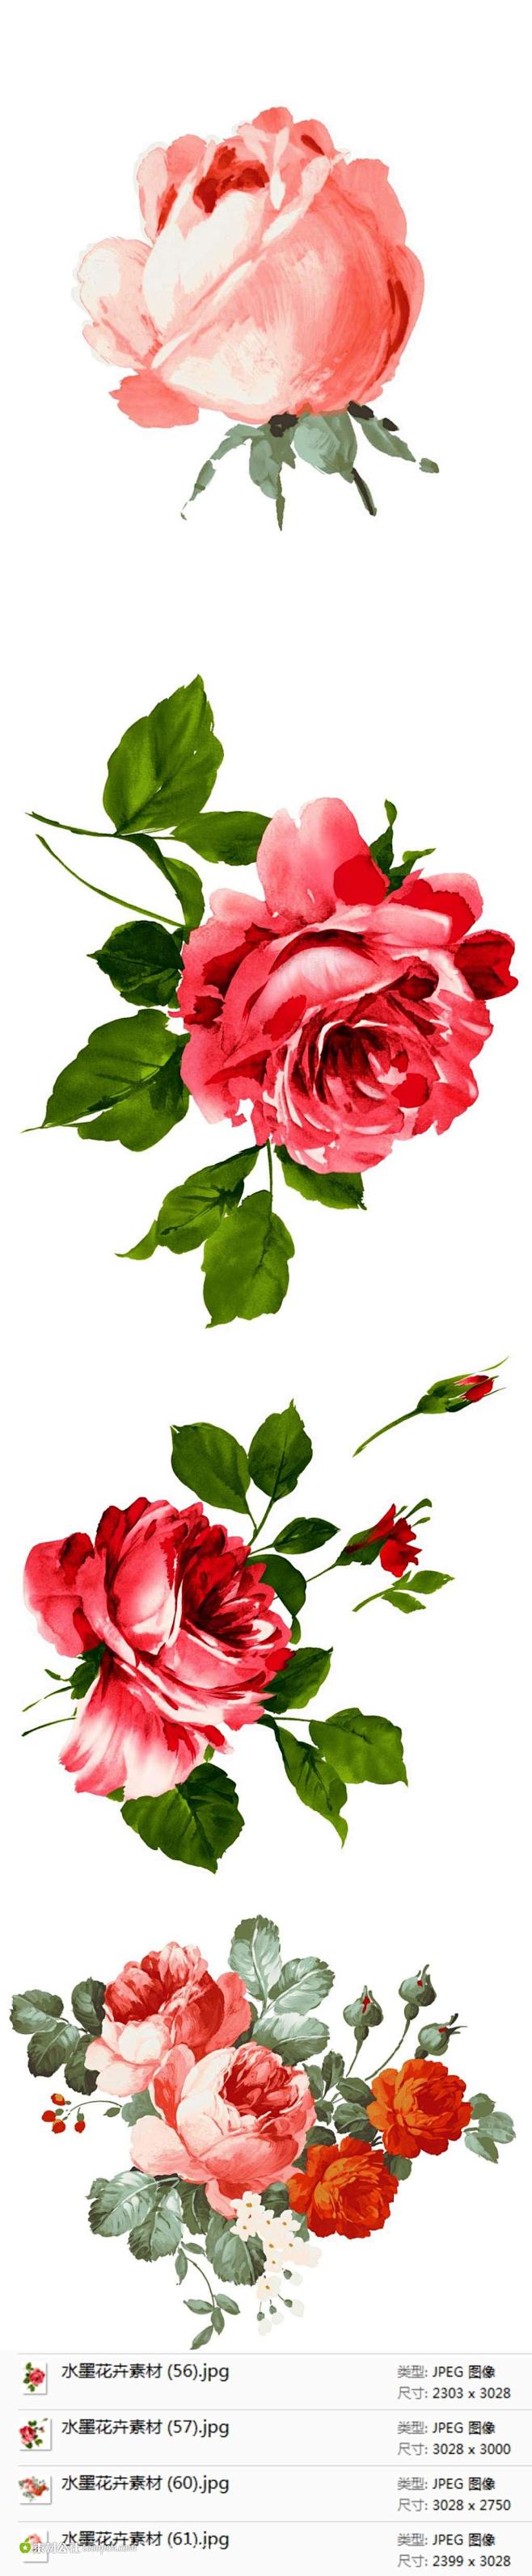 玫瑰花插画素材